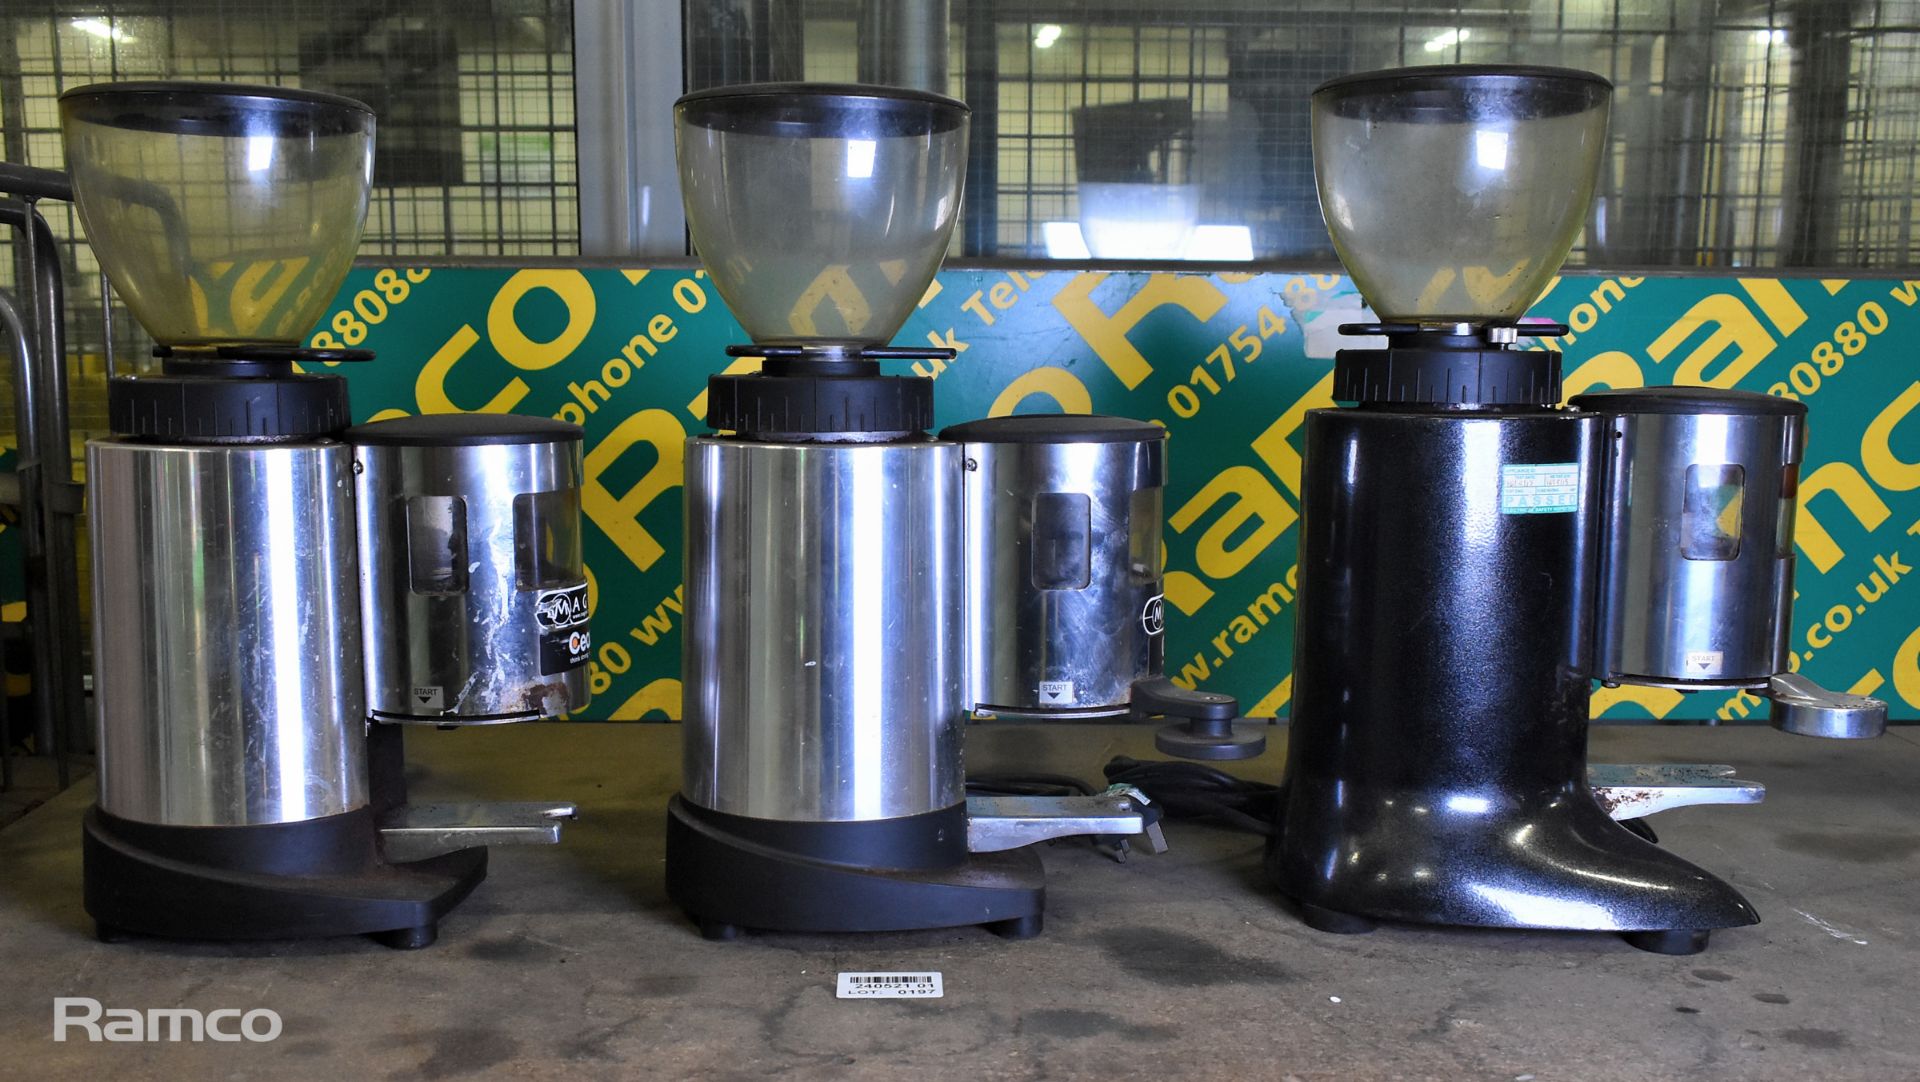 2x Ceado E6X espresso coffee grinders & Ceado E6 espresso coffee grinder - Image 2 of 7